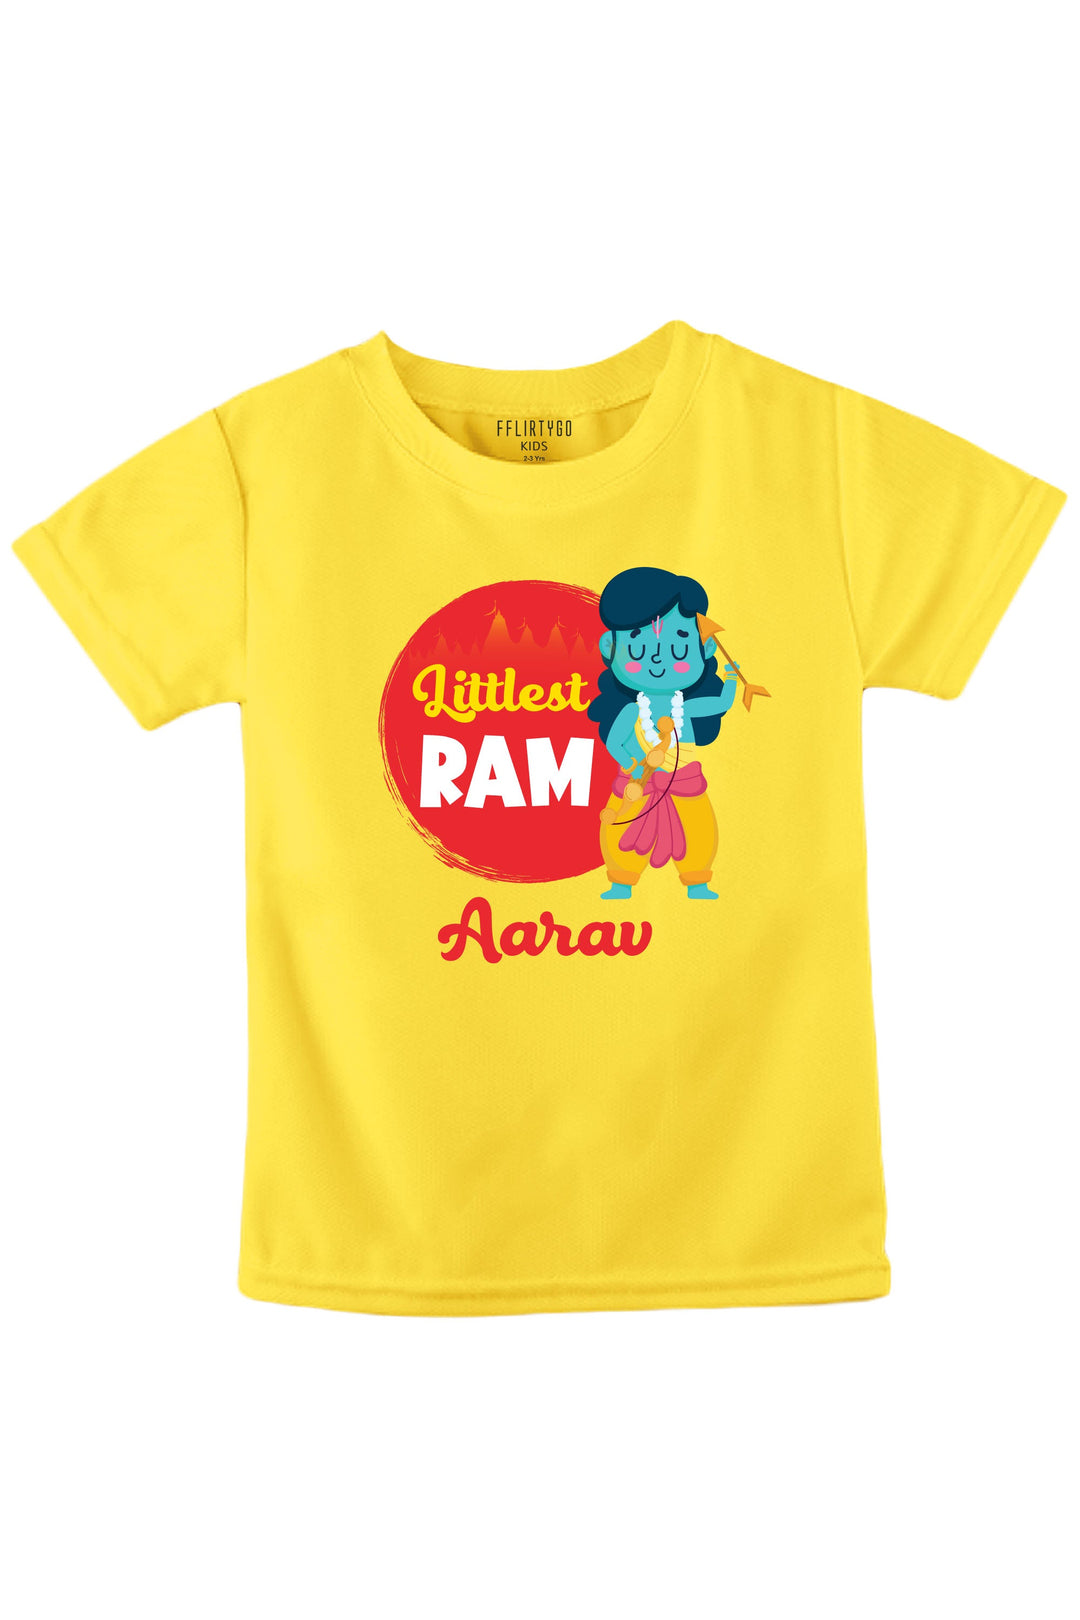 Littlest Ram Kids T Shirt w/ Custom Name